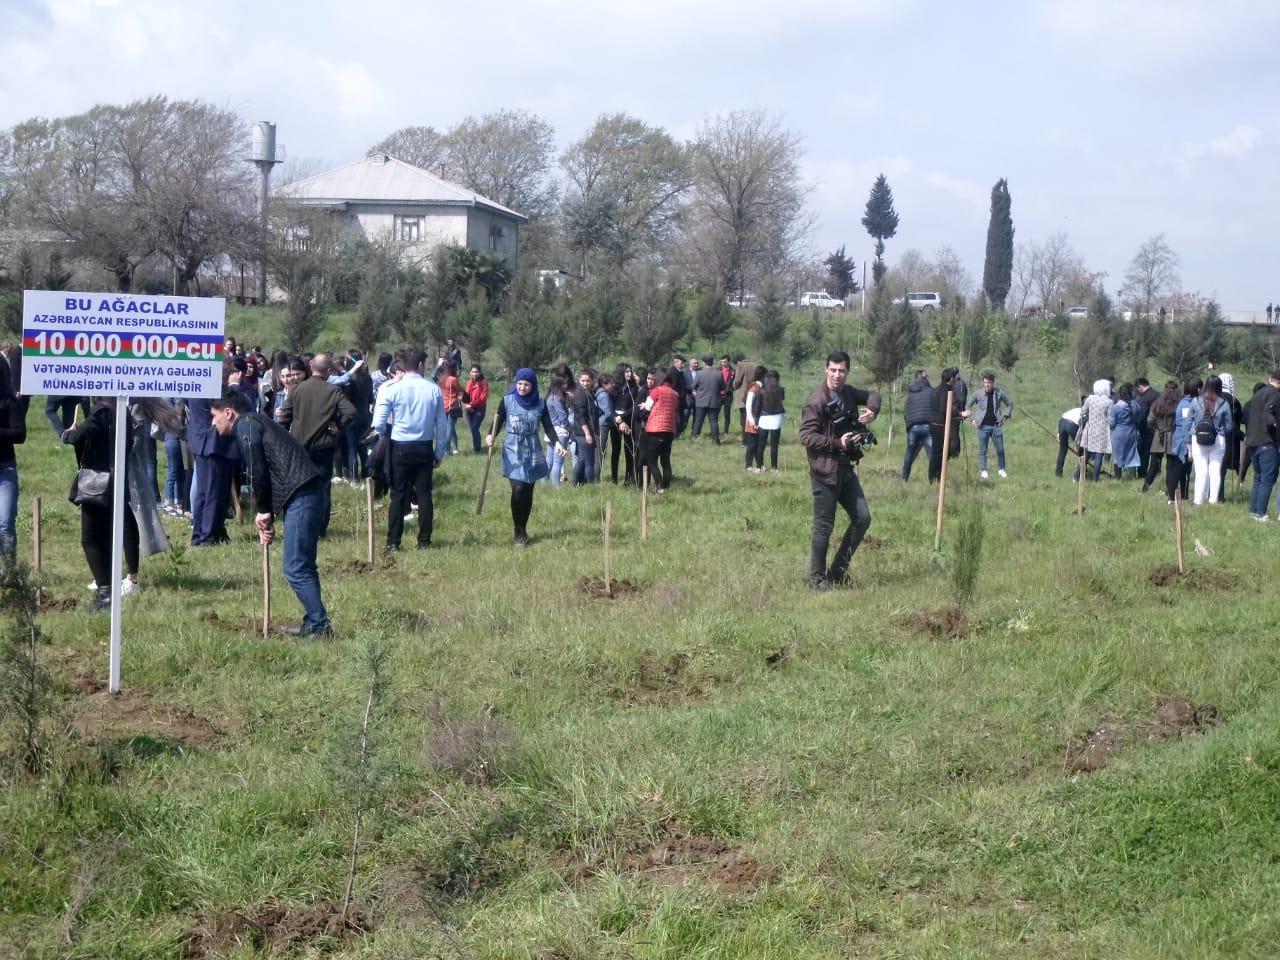 В Азербайджане посадили около 25 тыс. деревьев по случаю рождения 10-миллионного жителя